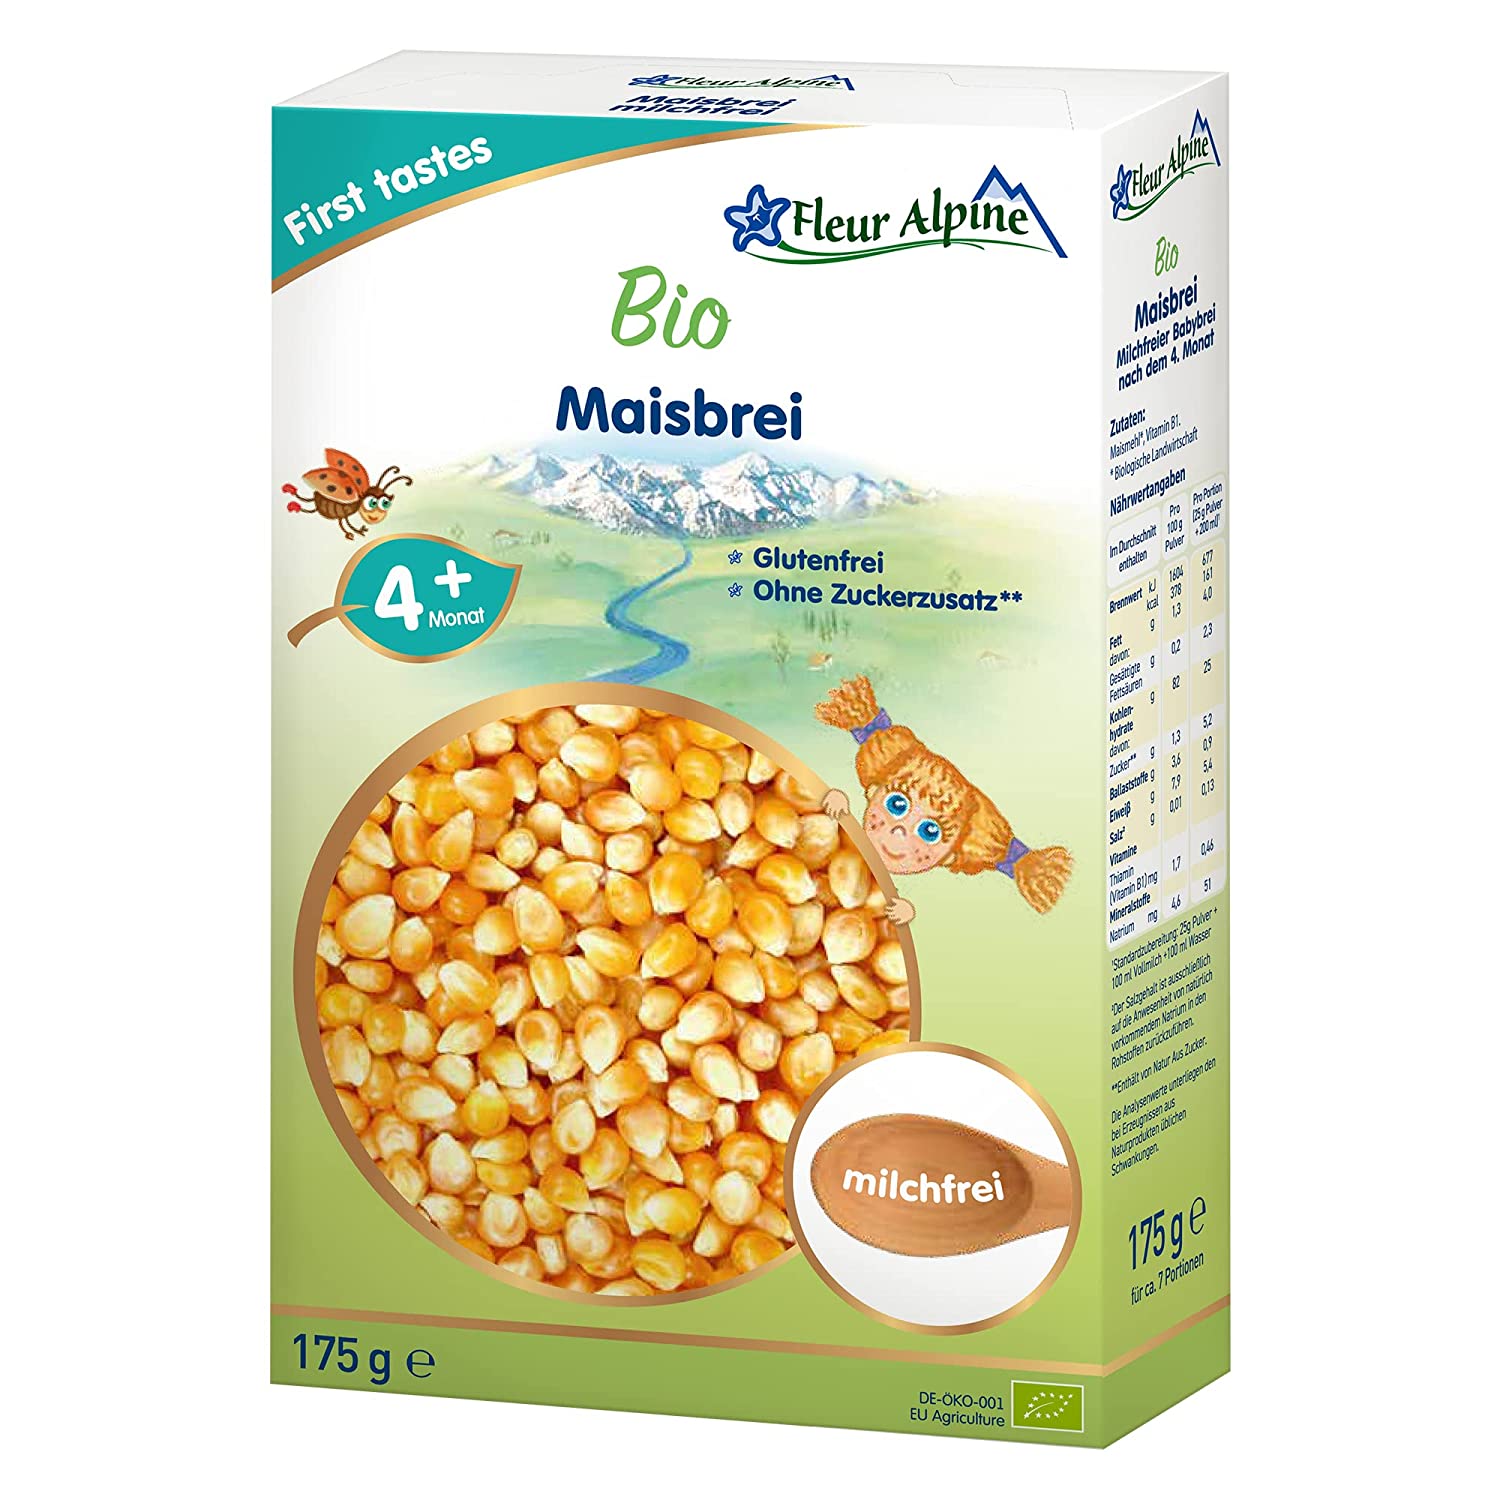 FLEUR ALPINE Bio Babybrei Mais - Leckerer Frühstücksbrei | Nahrhaft und glutenfrei | einfache Zubereitung | Babynahrung 4+ Monate ohne Zuckerzusatz | 7 Portionen